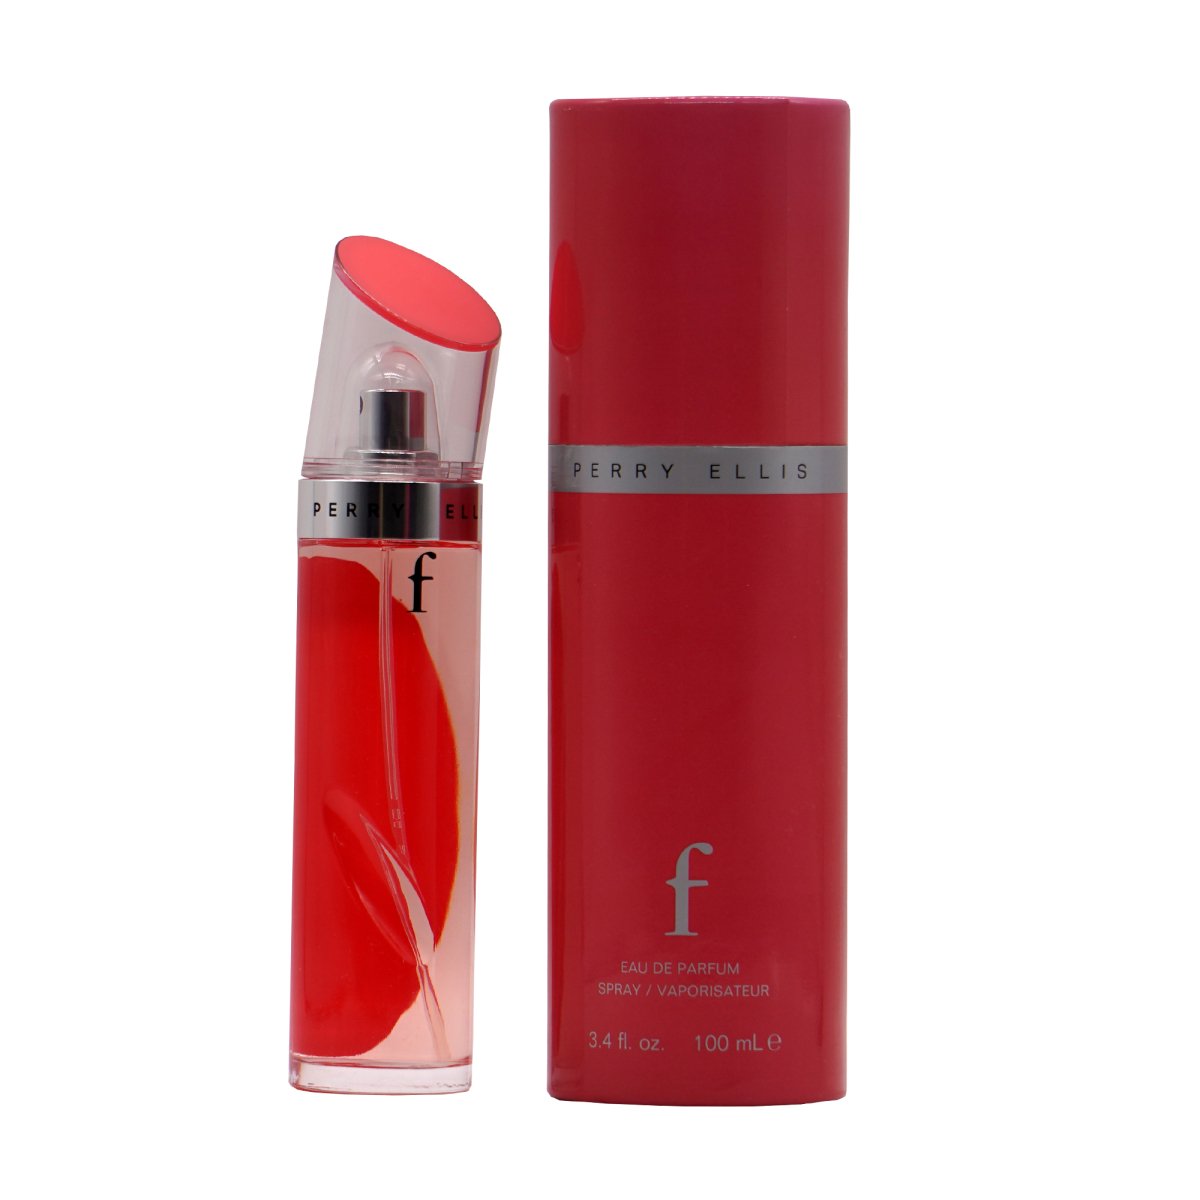 F - Perry Ellis - 3.4 oz - Eau de Parfum - Fragrance - 844061000711 - Fragrance